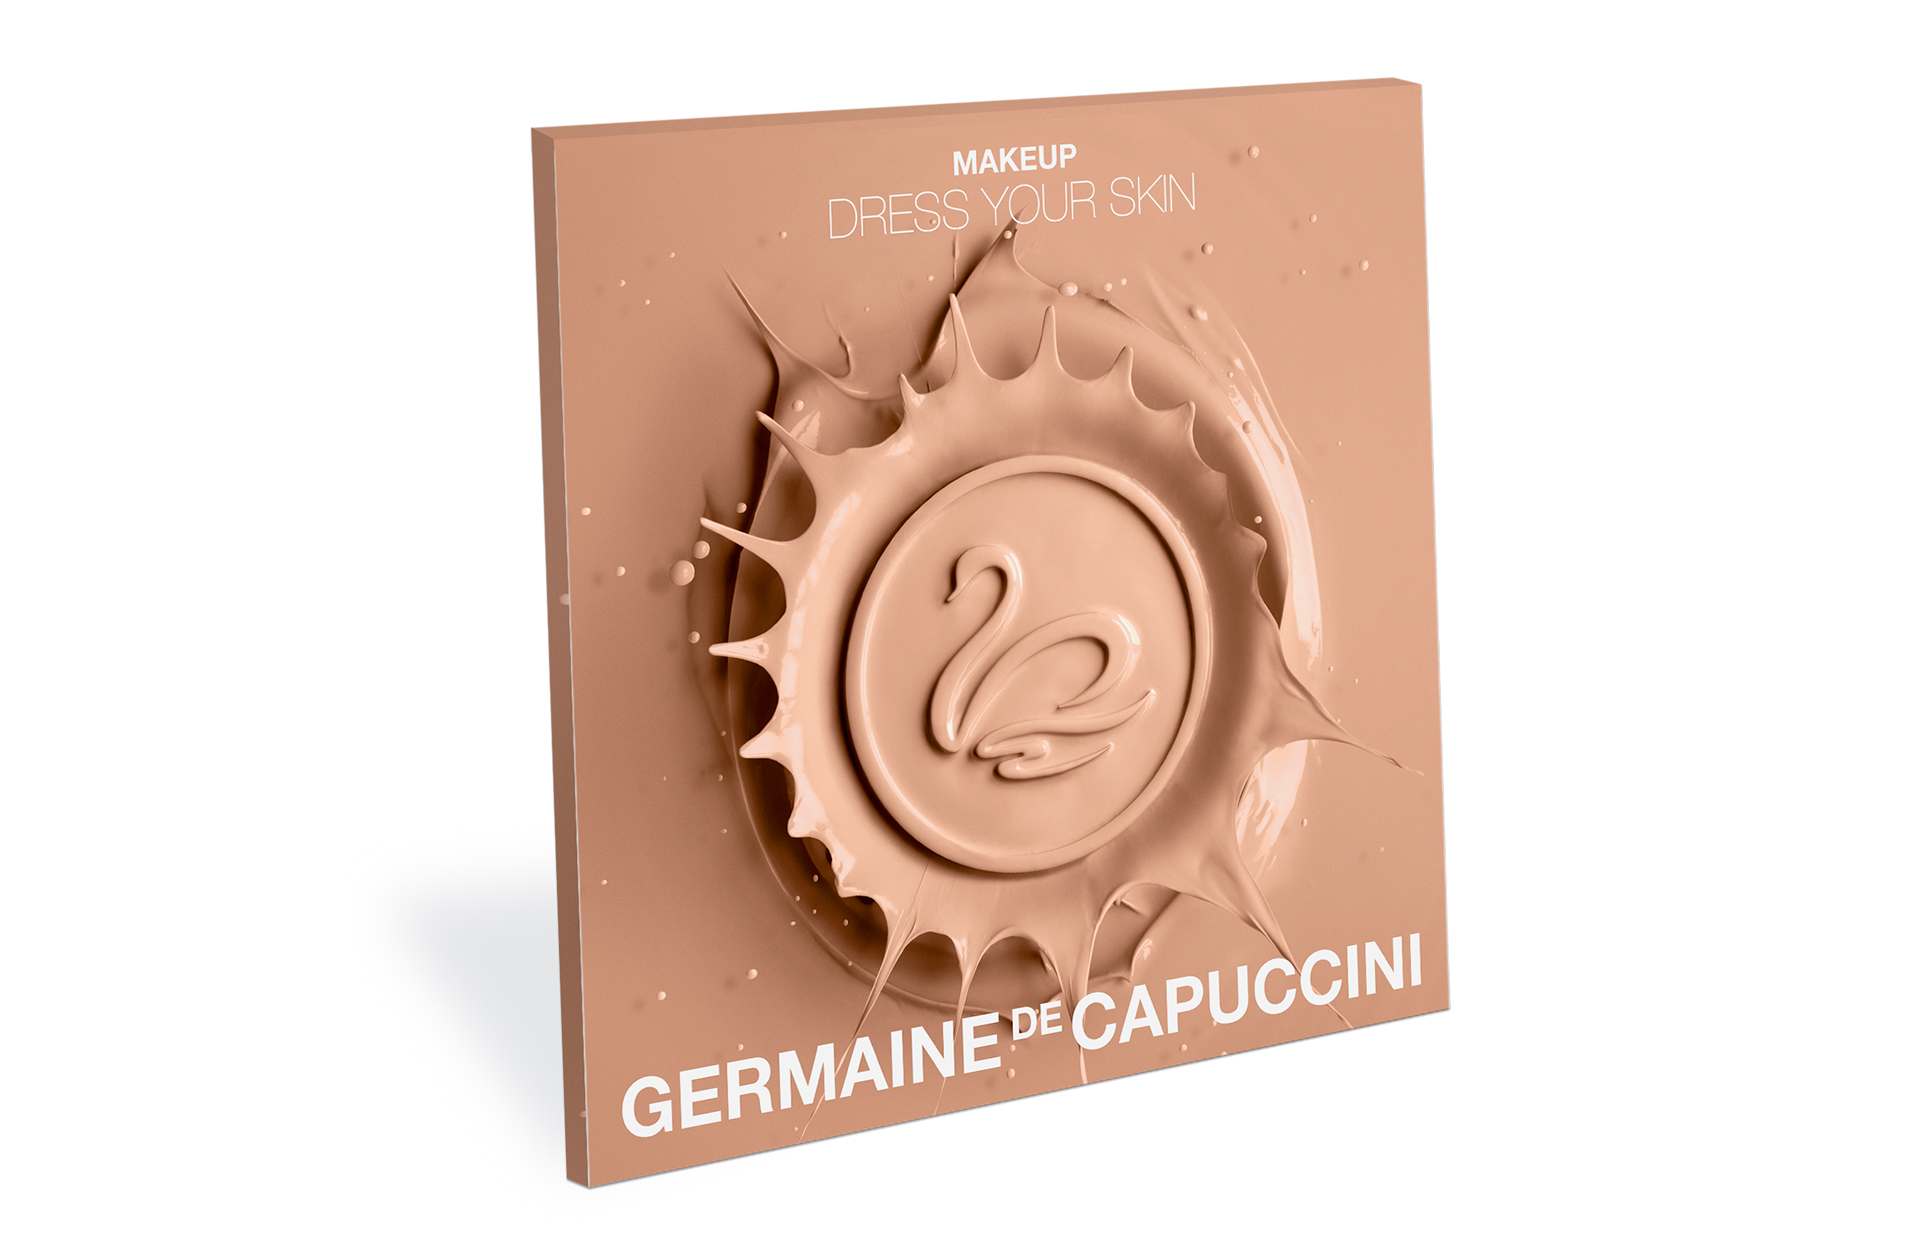 Aplicación de imagen para nueva línea make up Germaine de Capuccini. Shooting. Dirección de arte. Comunicación.